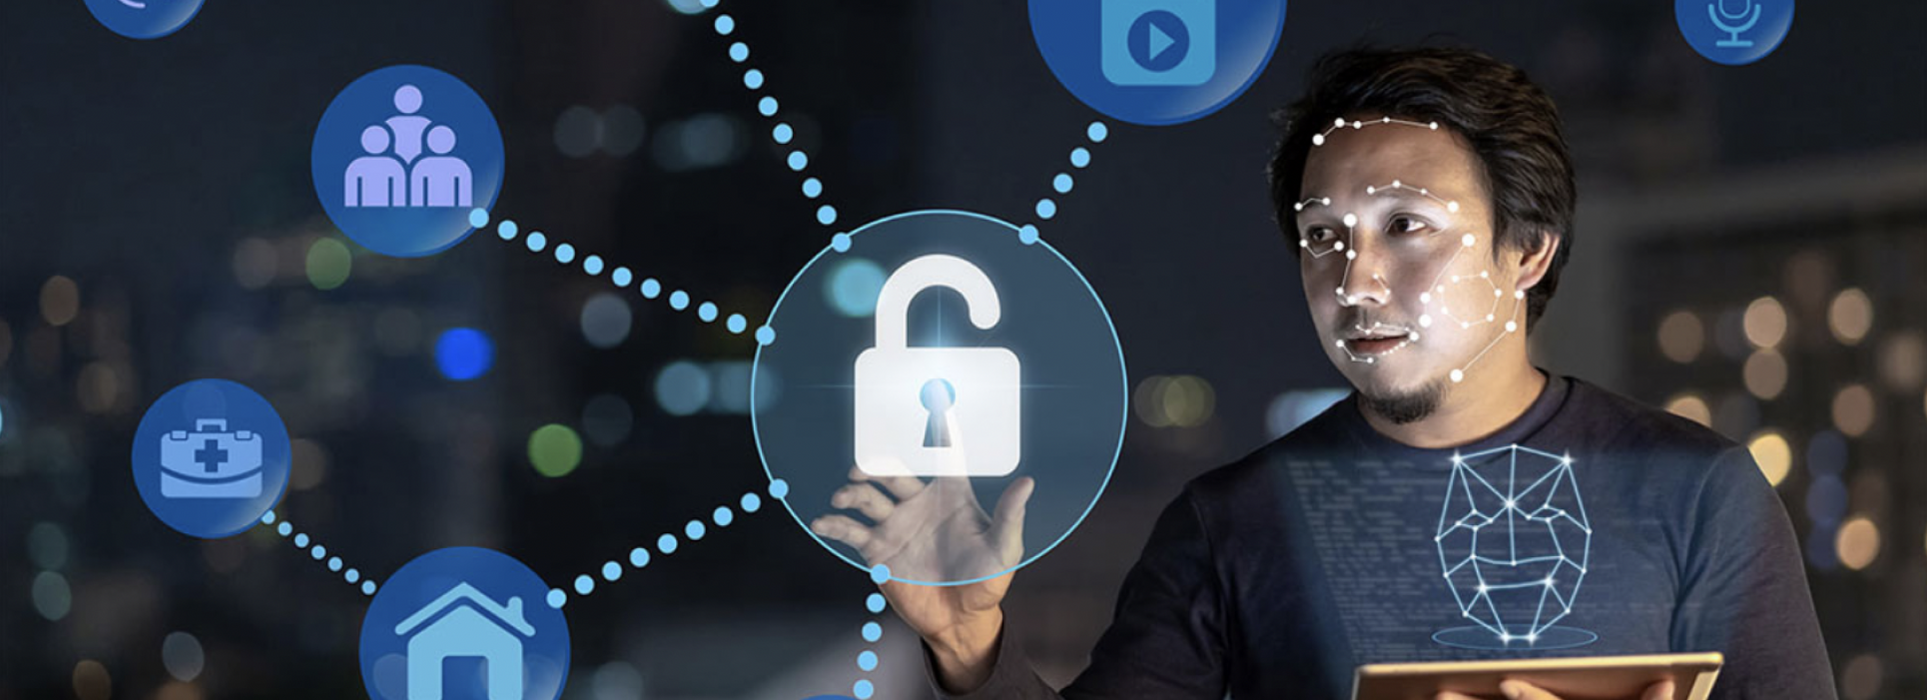 IoT-Cybersicherheit – Wie sichert man das IoT-Netzwerk?